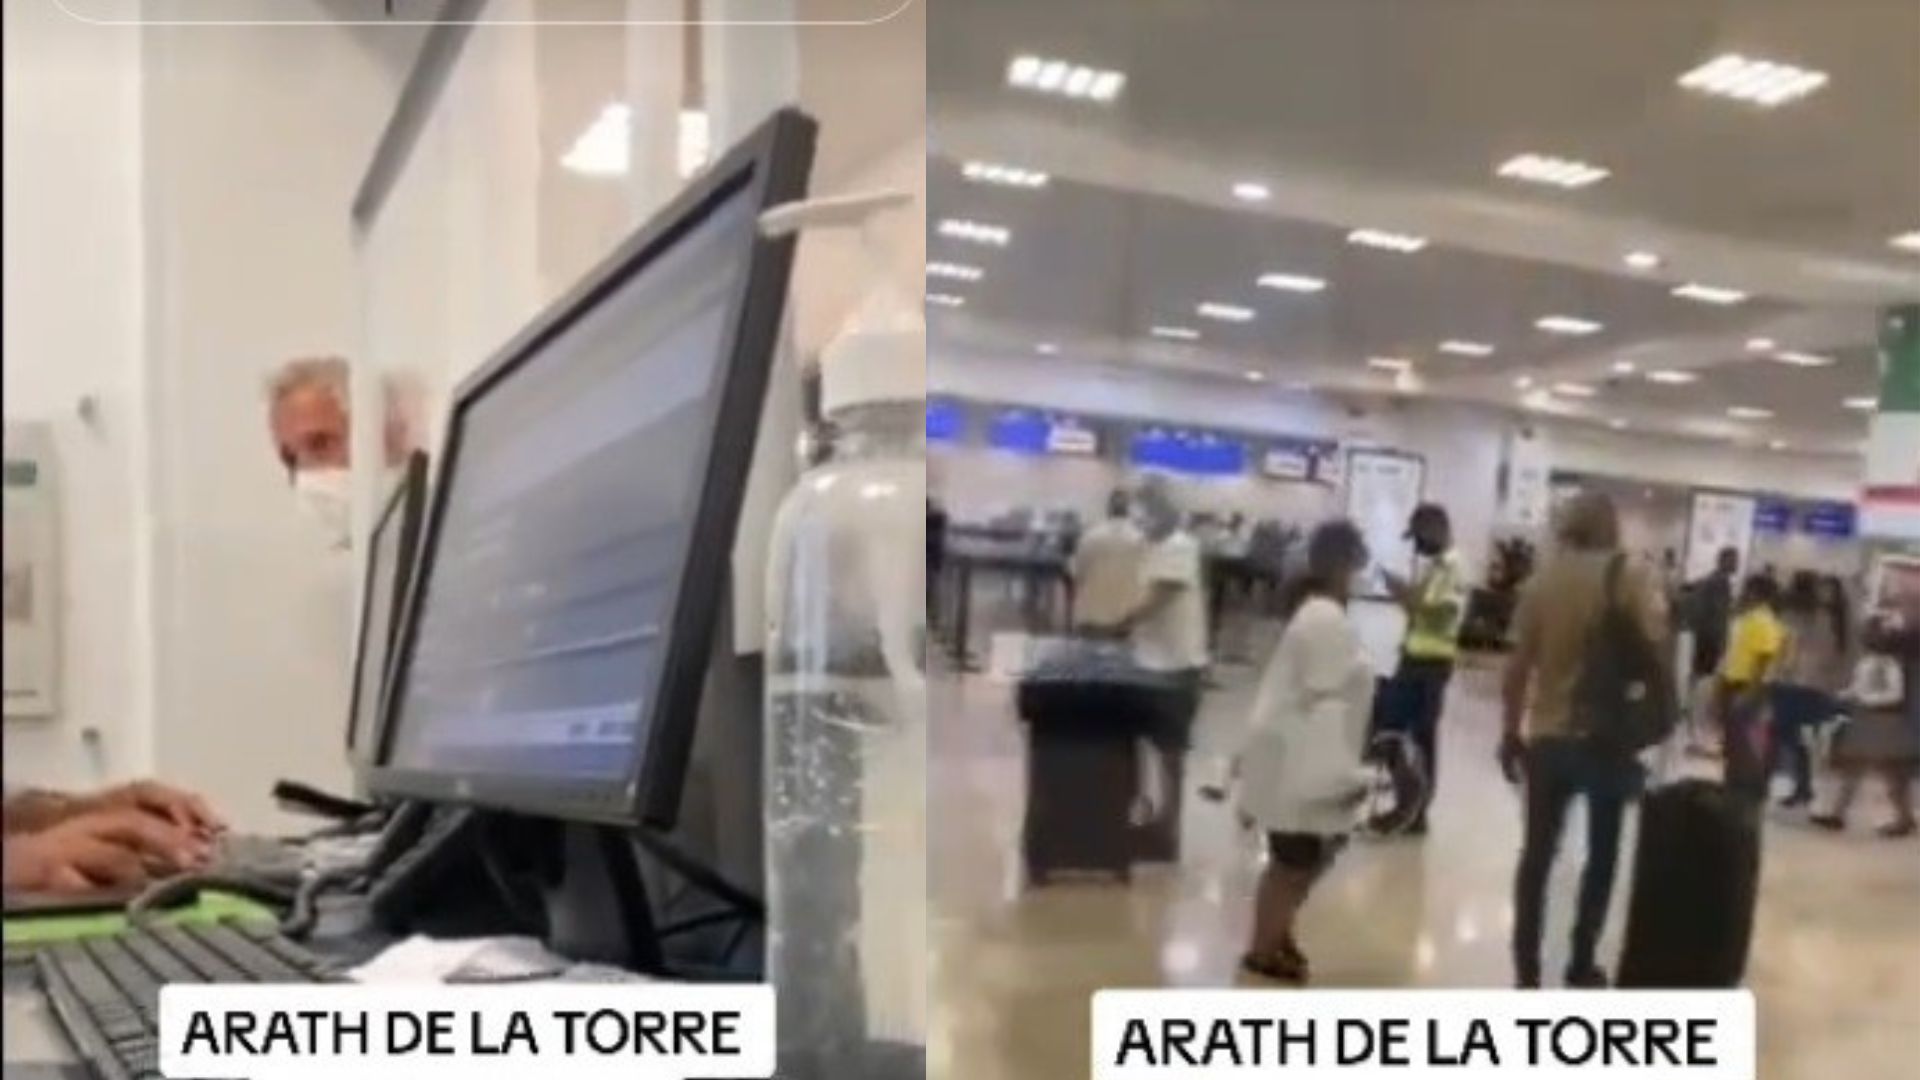 Arath de la Torre mantuvo una acalorada discusión con trabajadores del aeropuerto de Cancún por un vuelo perdido.
(Captura de pantalla @RobertoGzz)